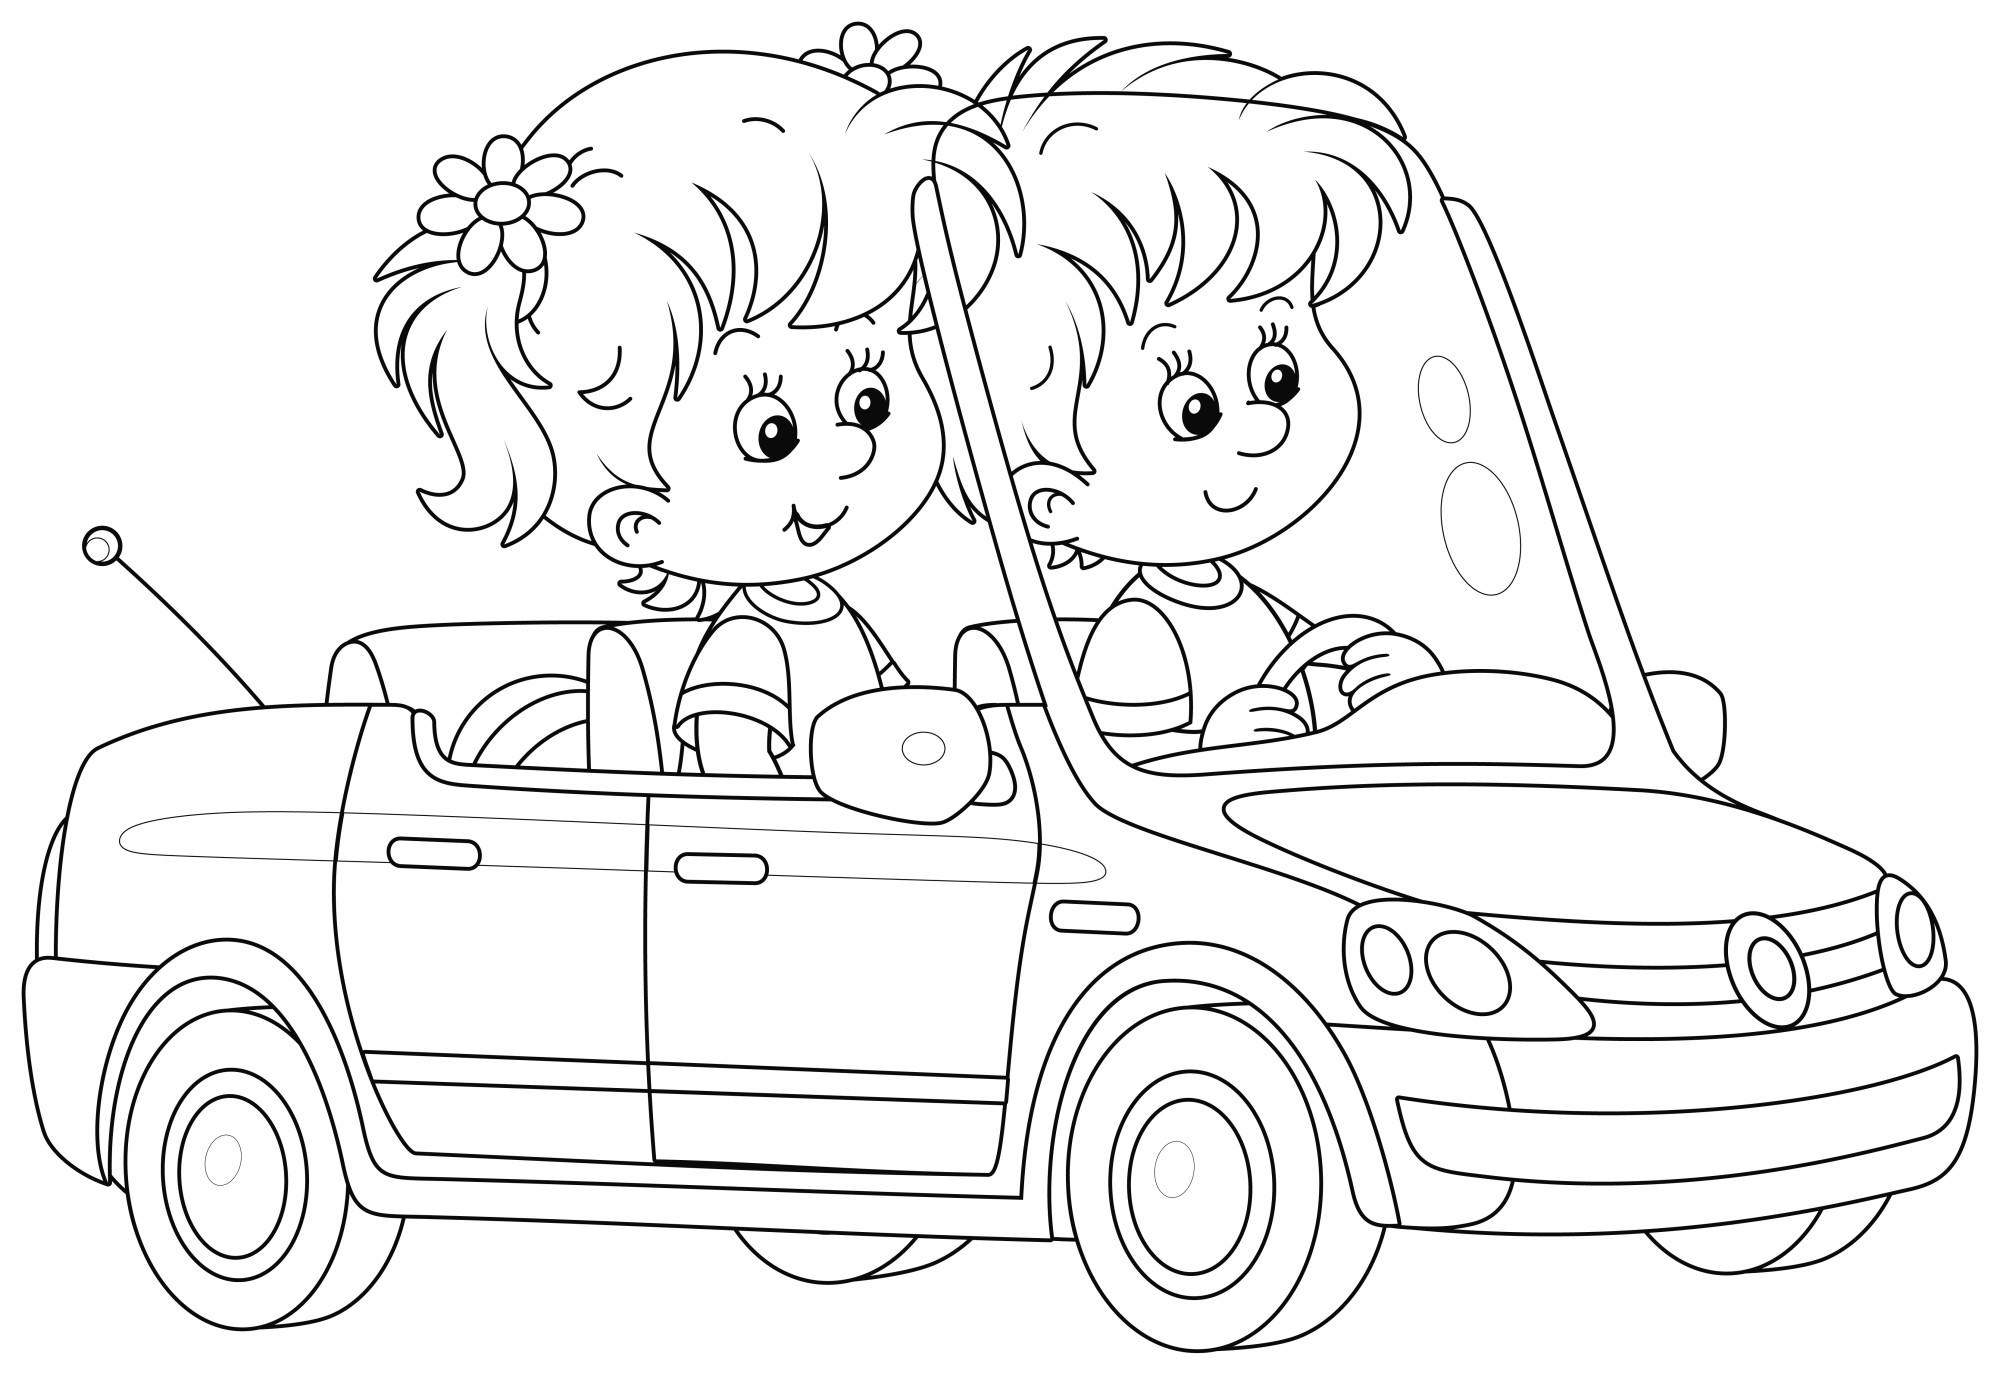 Раскраска для детей: маленькие девочка и мальчик едут на такси